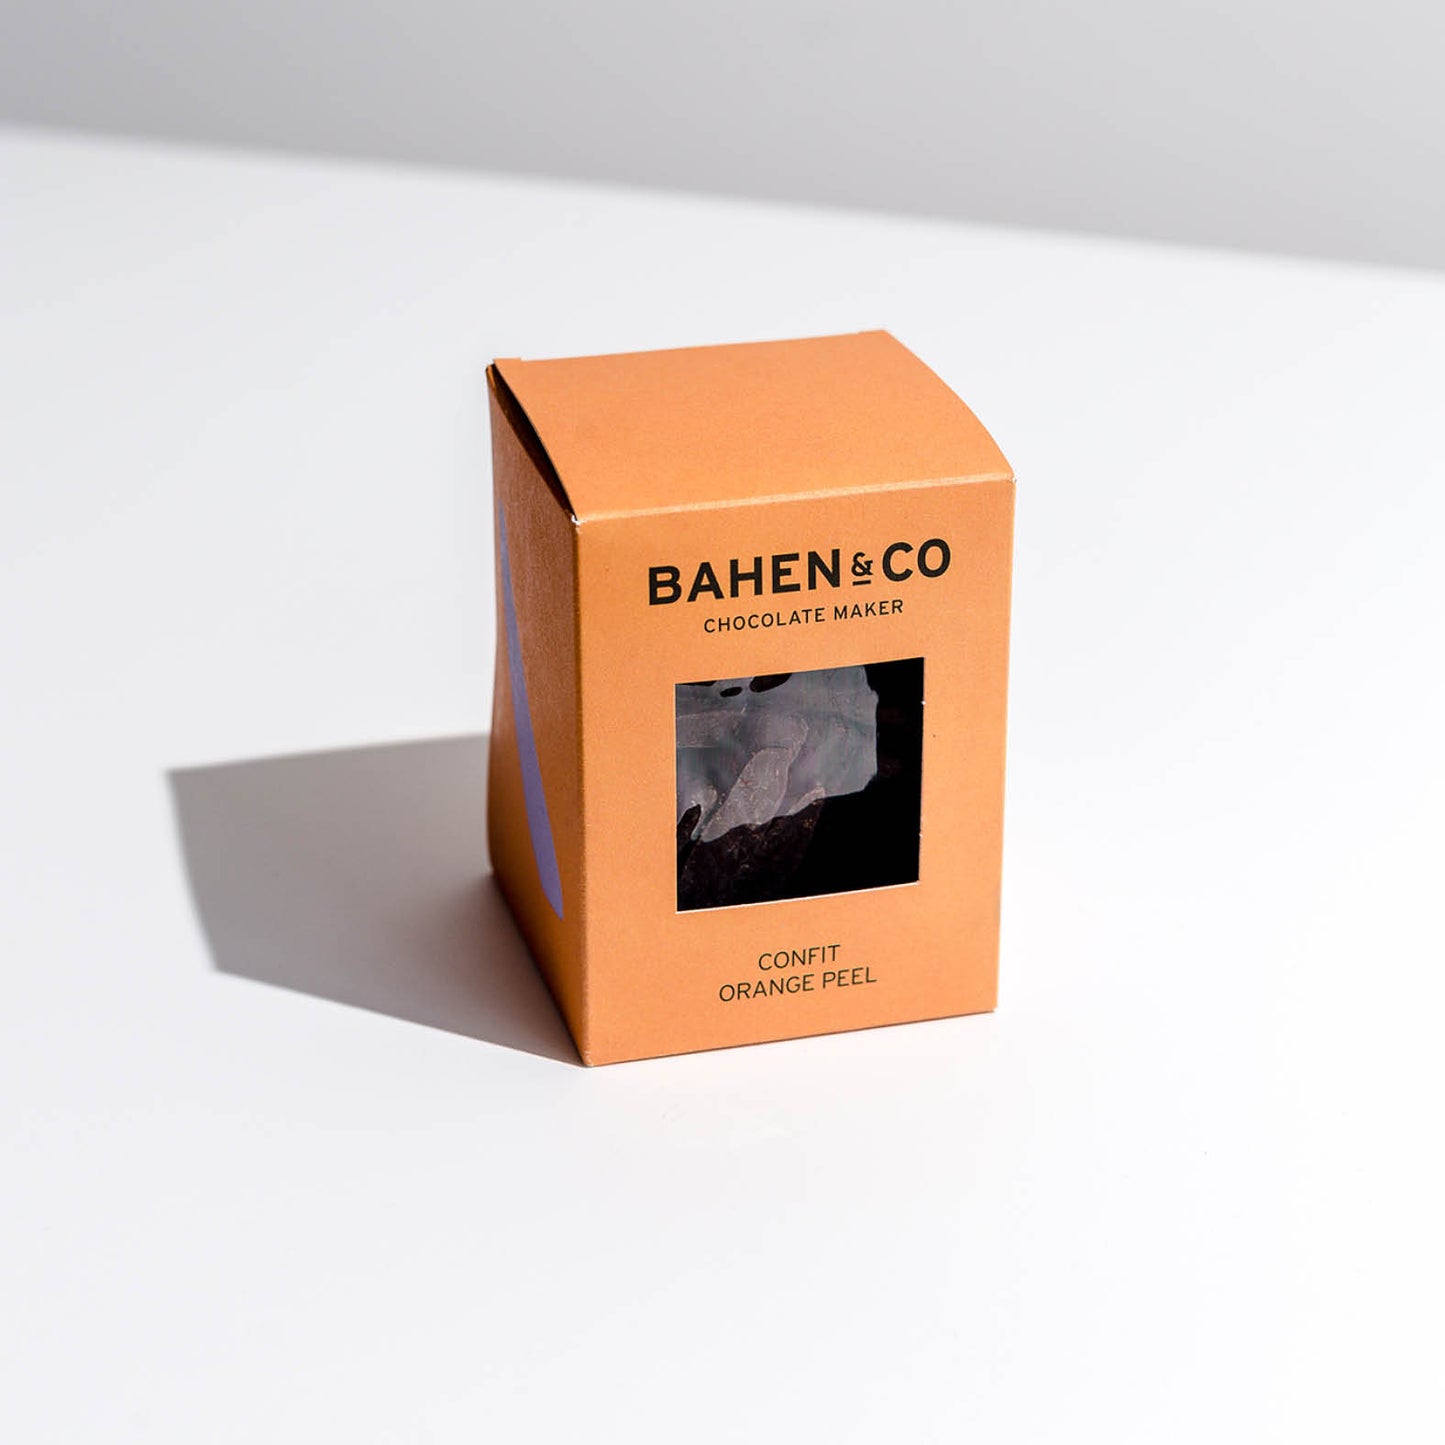 Bahen & Co Confit Orange Peel